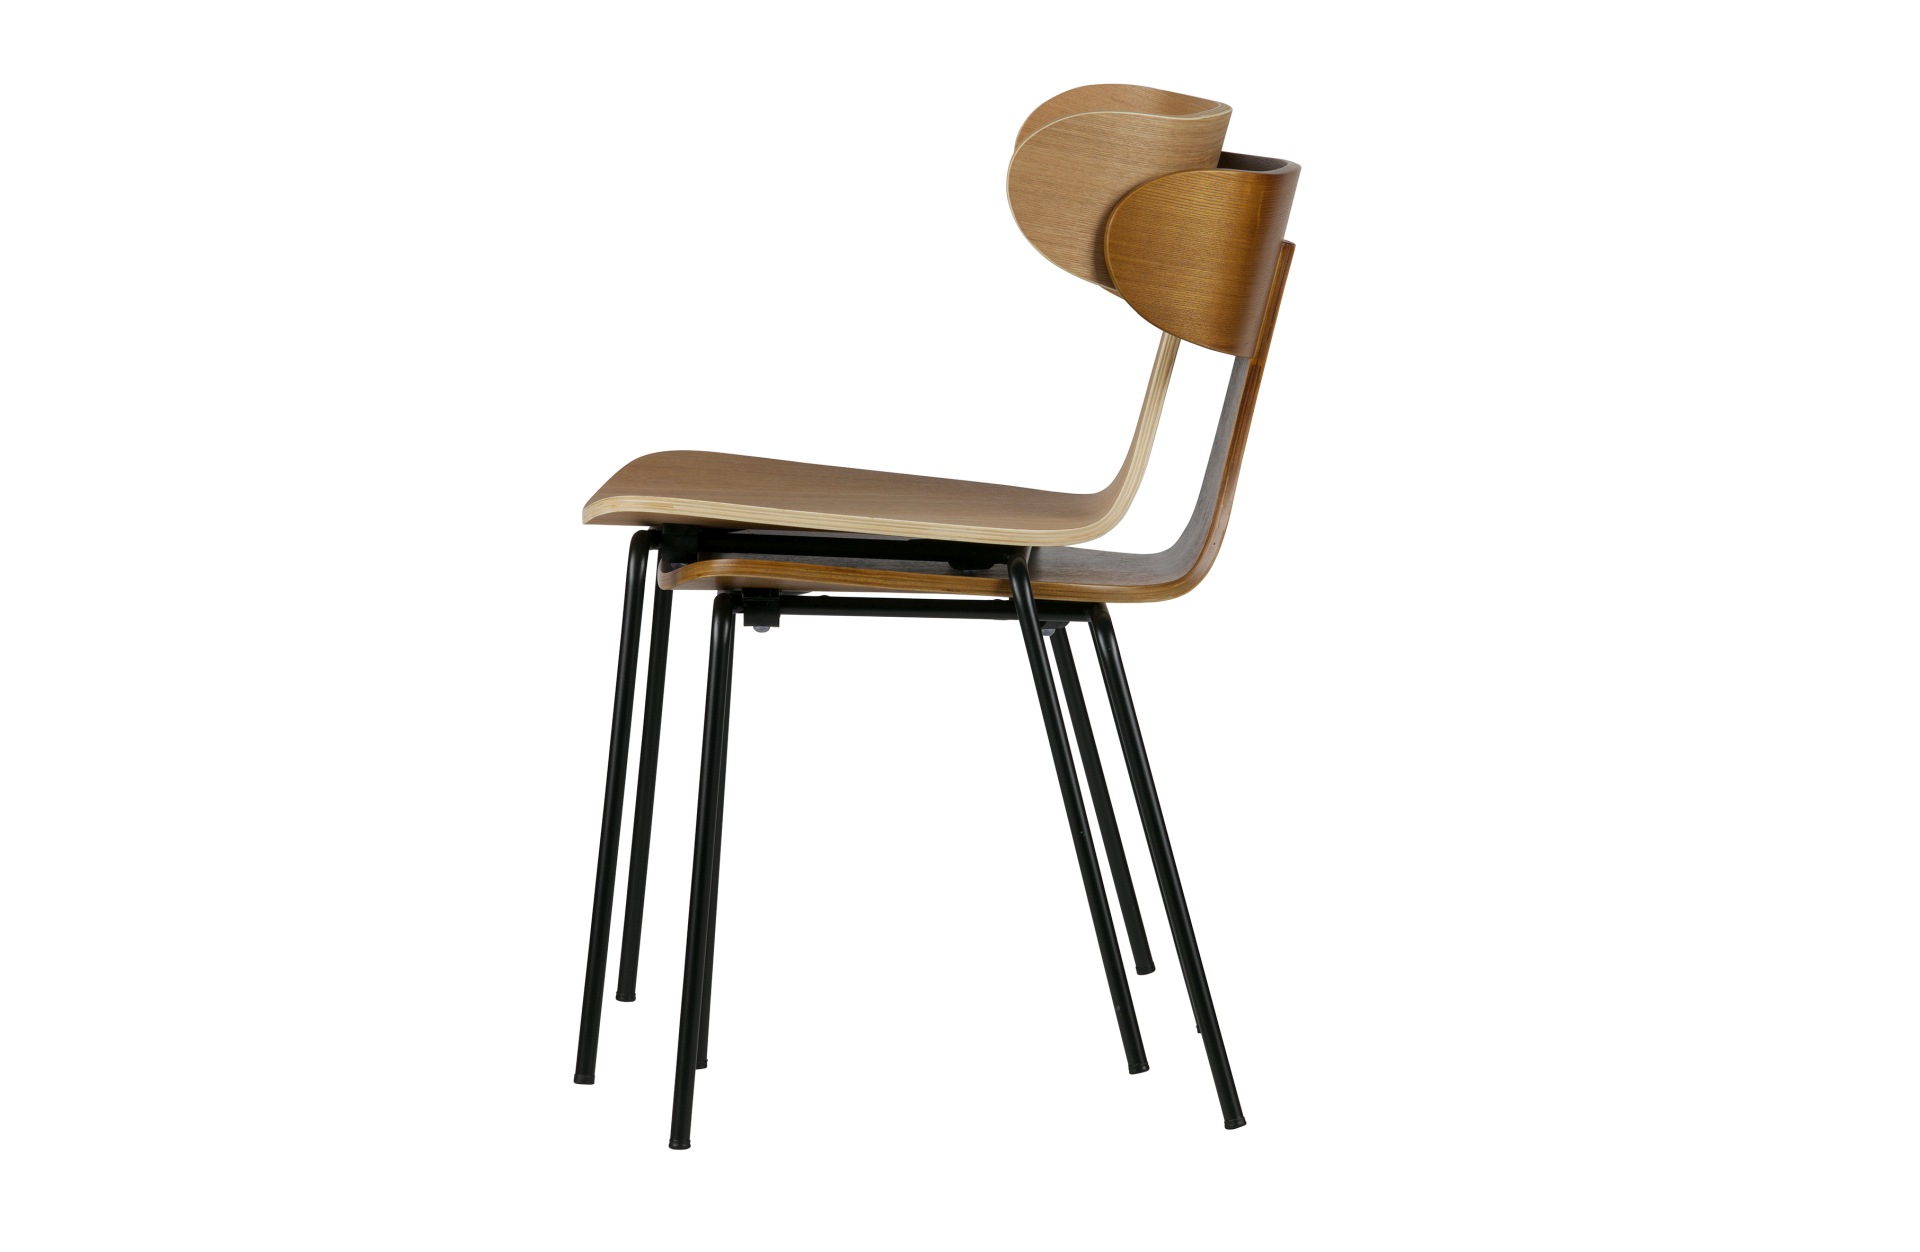 Der Stuhl Form überzeugt mit seinem besonderen Design. Gefertigt wurde der Stuhl aus Holz, welches einen braunen Farbton besitzt. Das Gestell ist schwarz und wurde aus Metall gefertigt.